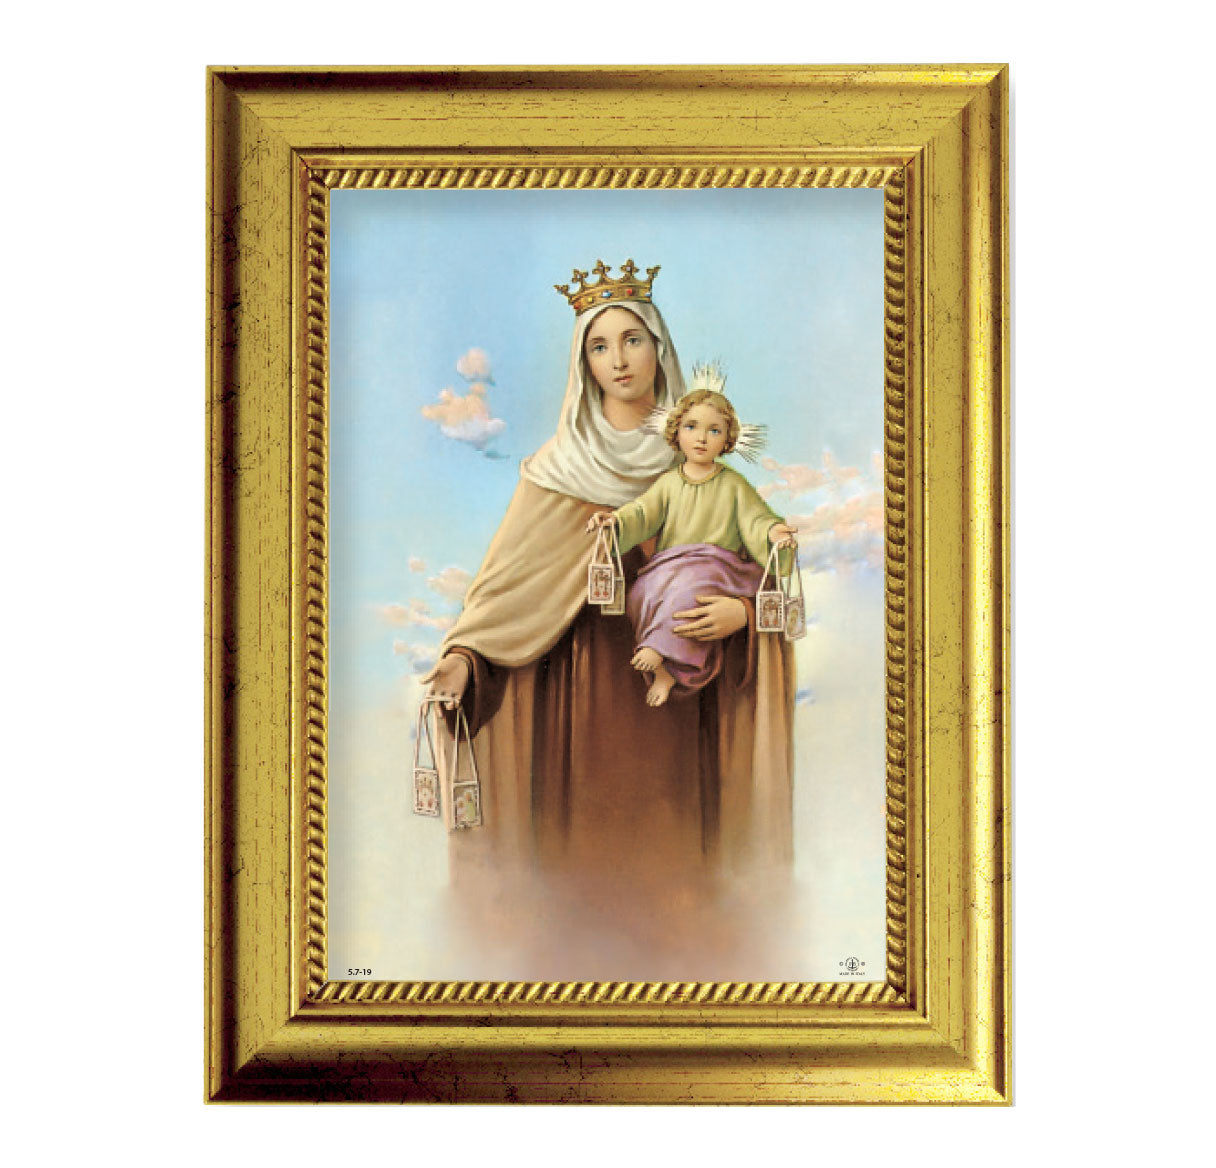 Our Lady of Mount Carmel Gold-Leaf Framed Art